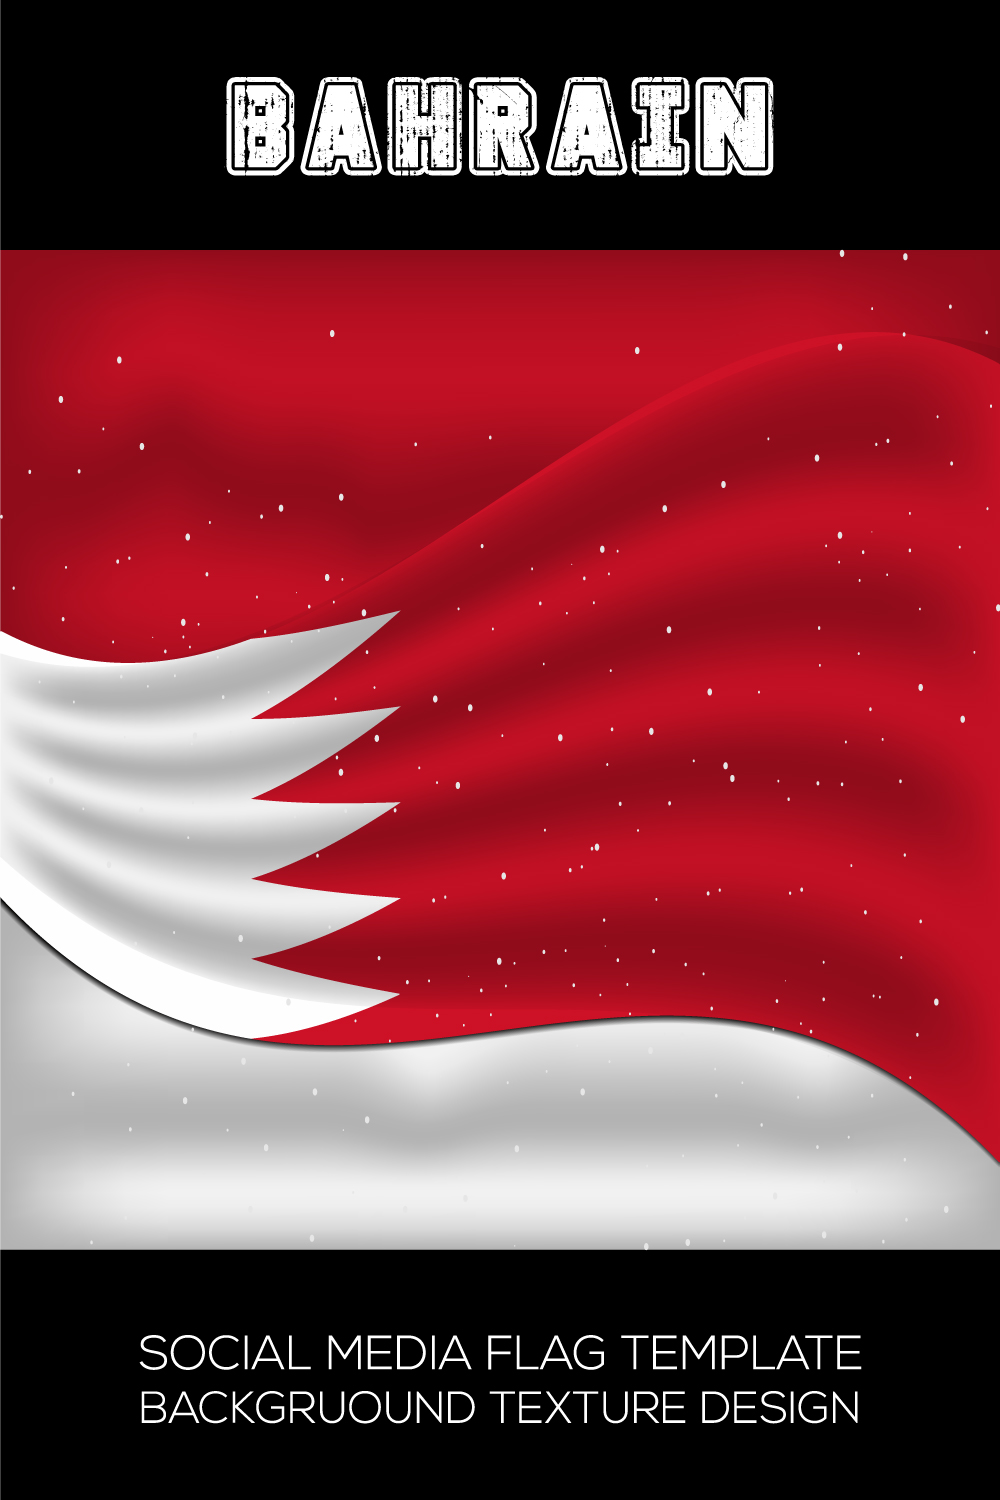 Exquisite image of Bahrain flag.